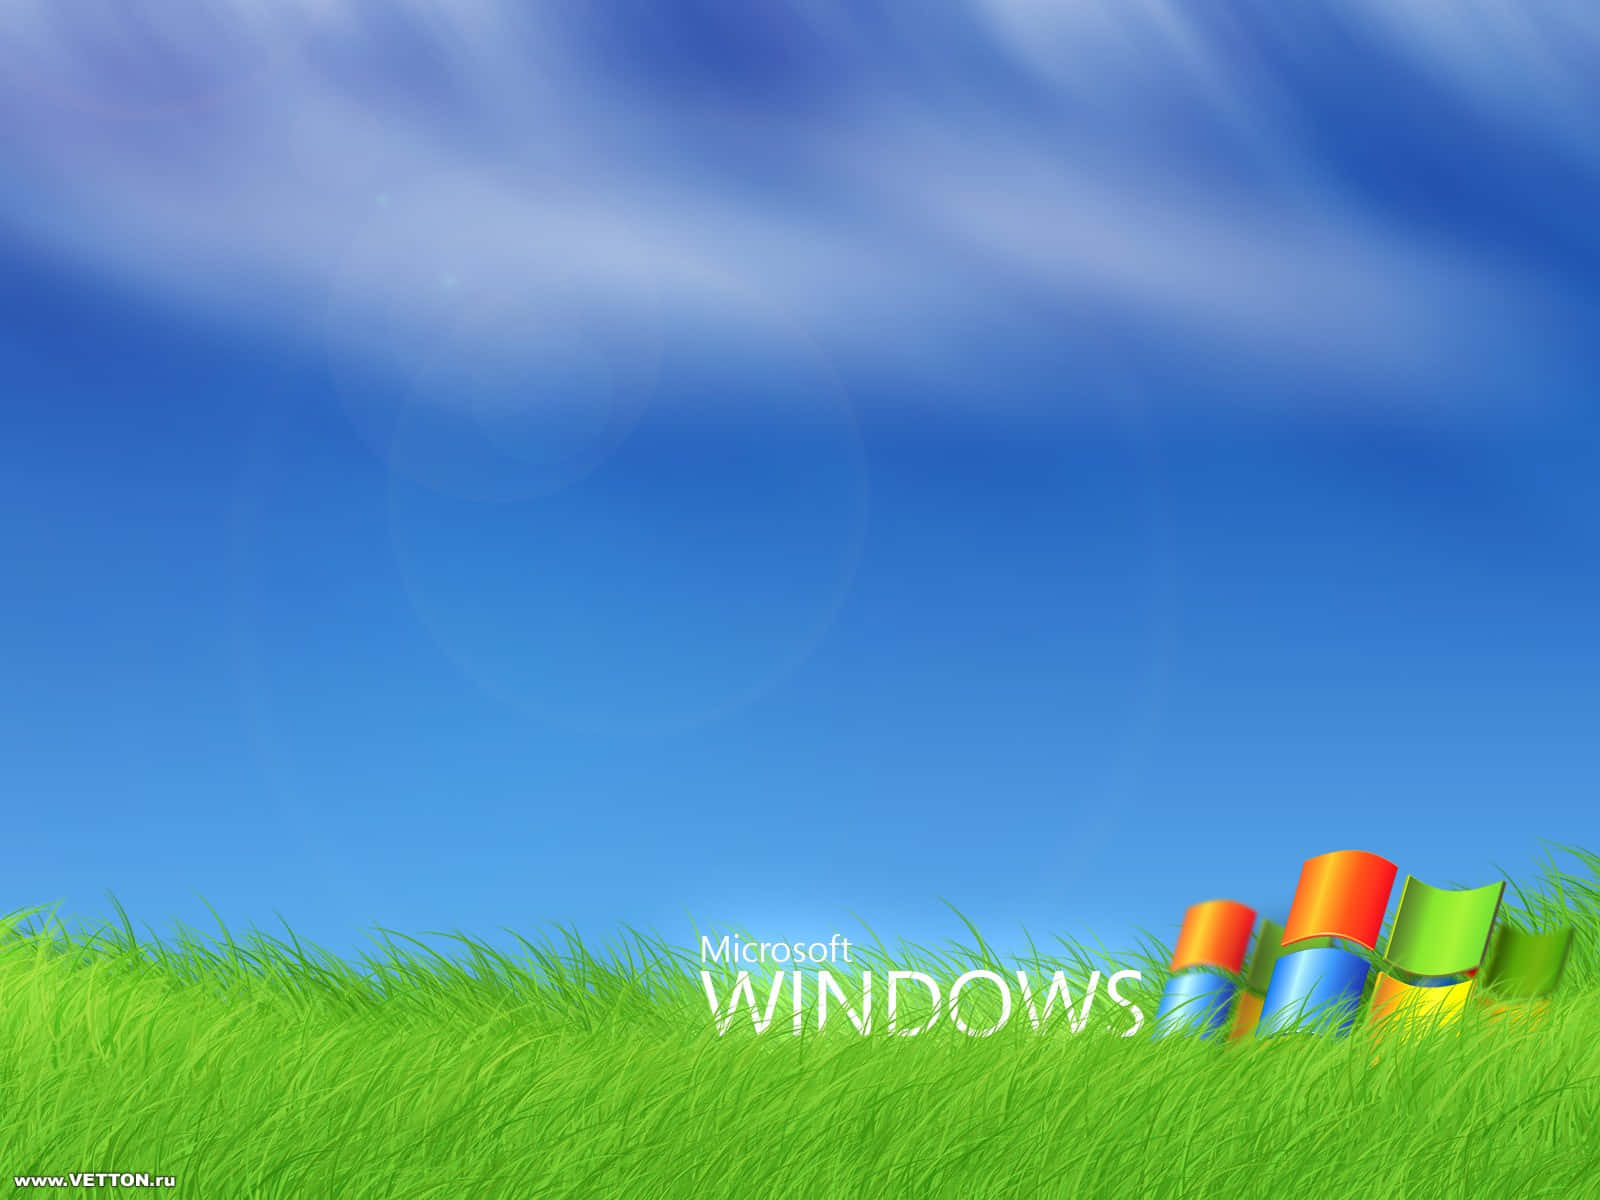 Windows Xp Bliss Original Wallpaper